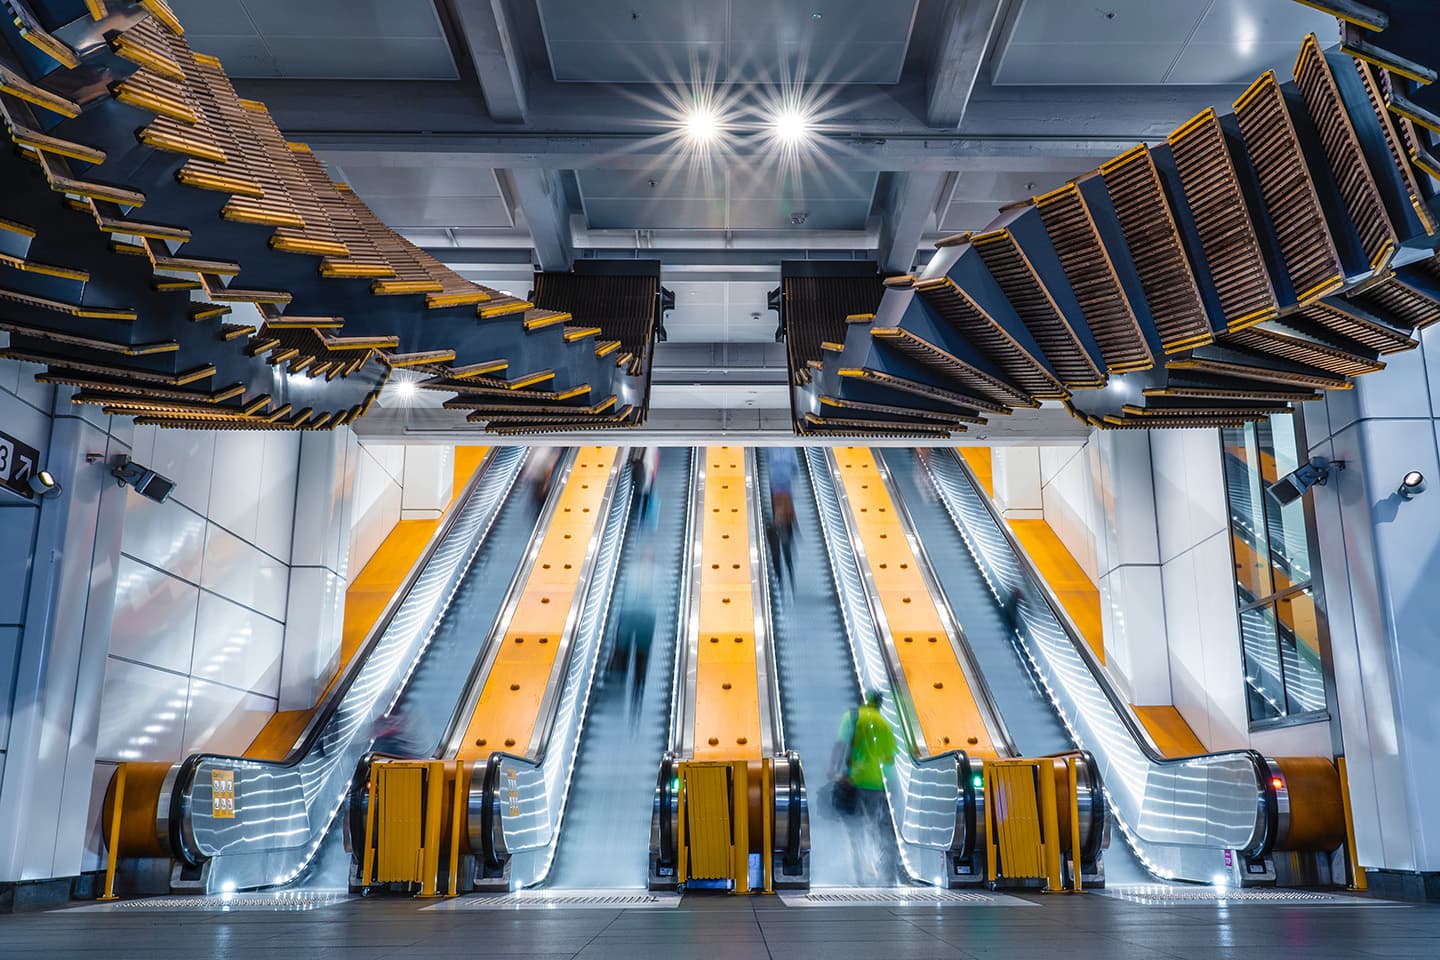 Sydney metro station